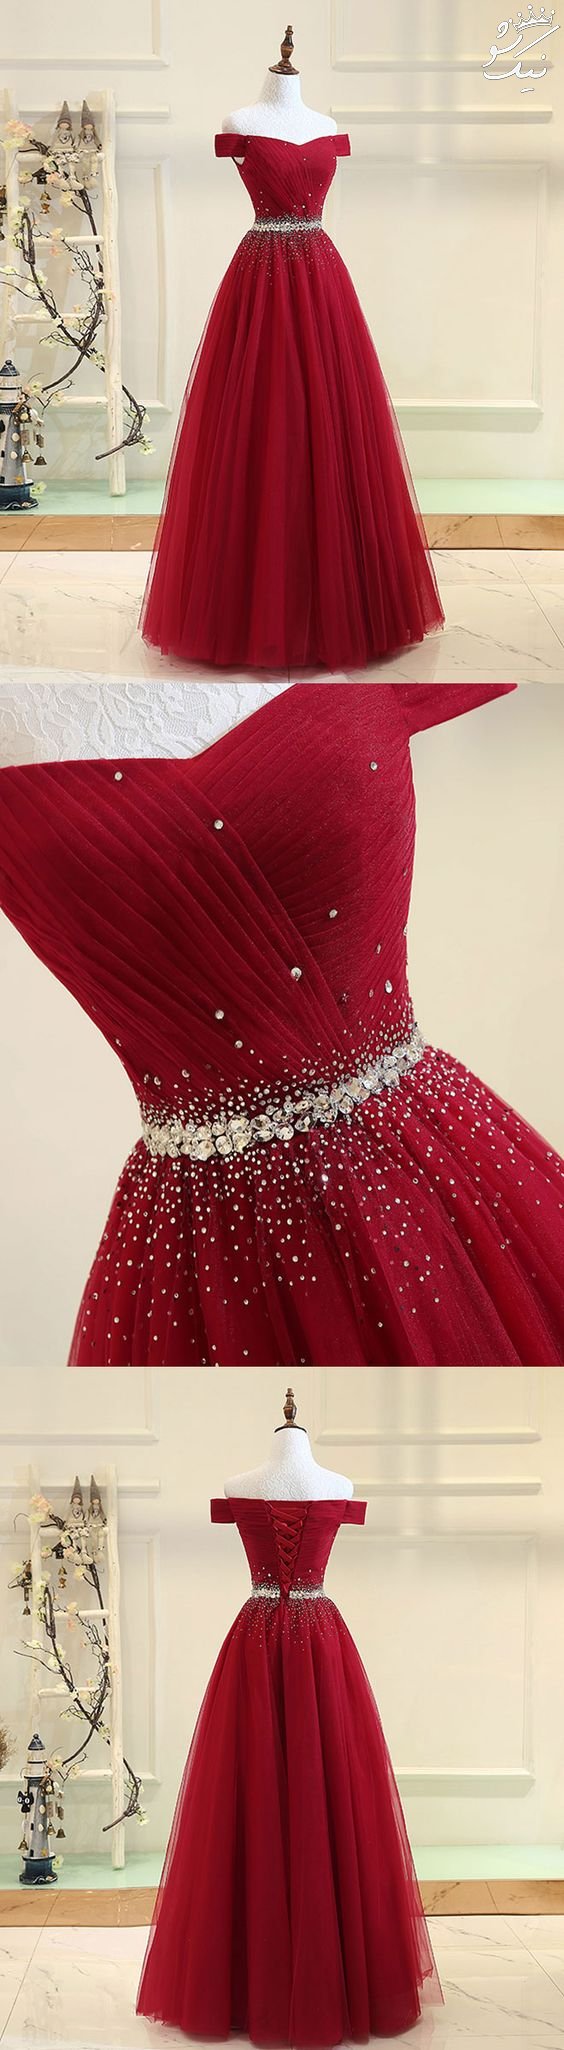 مدل لباس بلند مجلسی دخترانه در اینستاگرام
